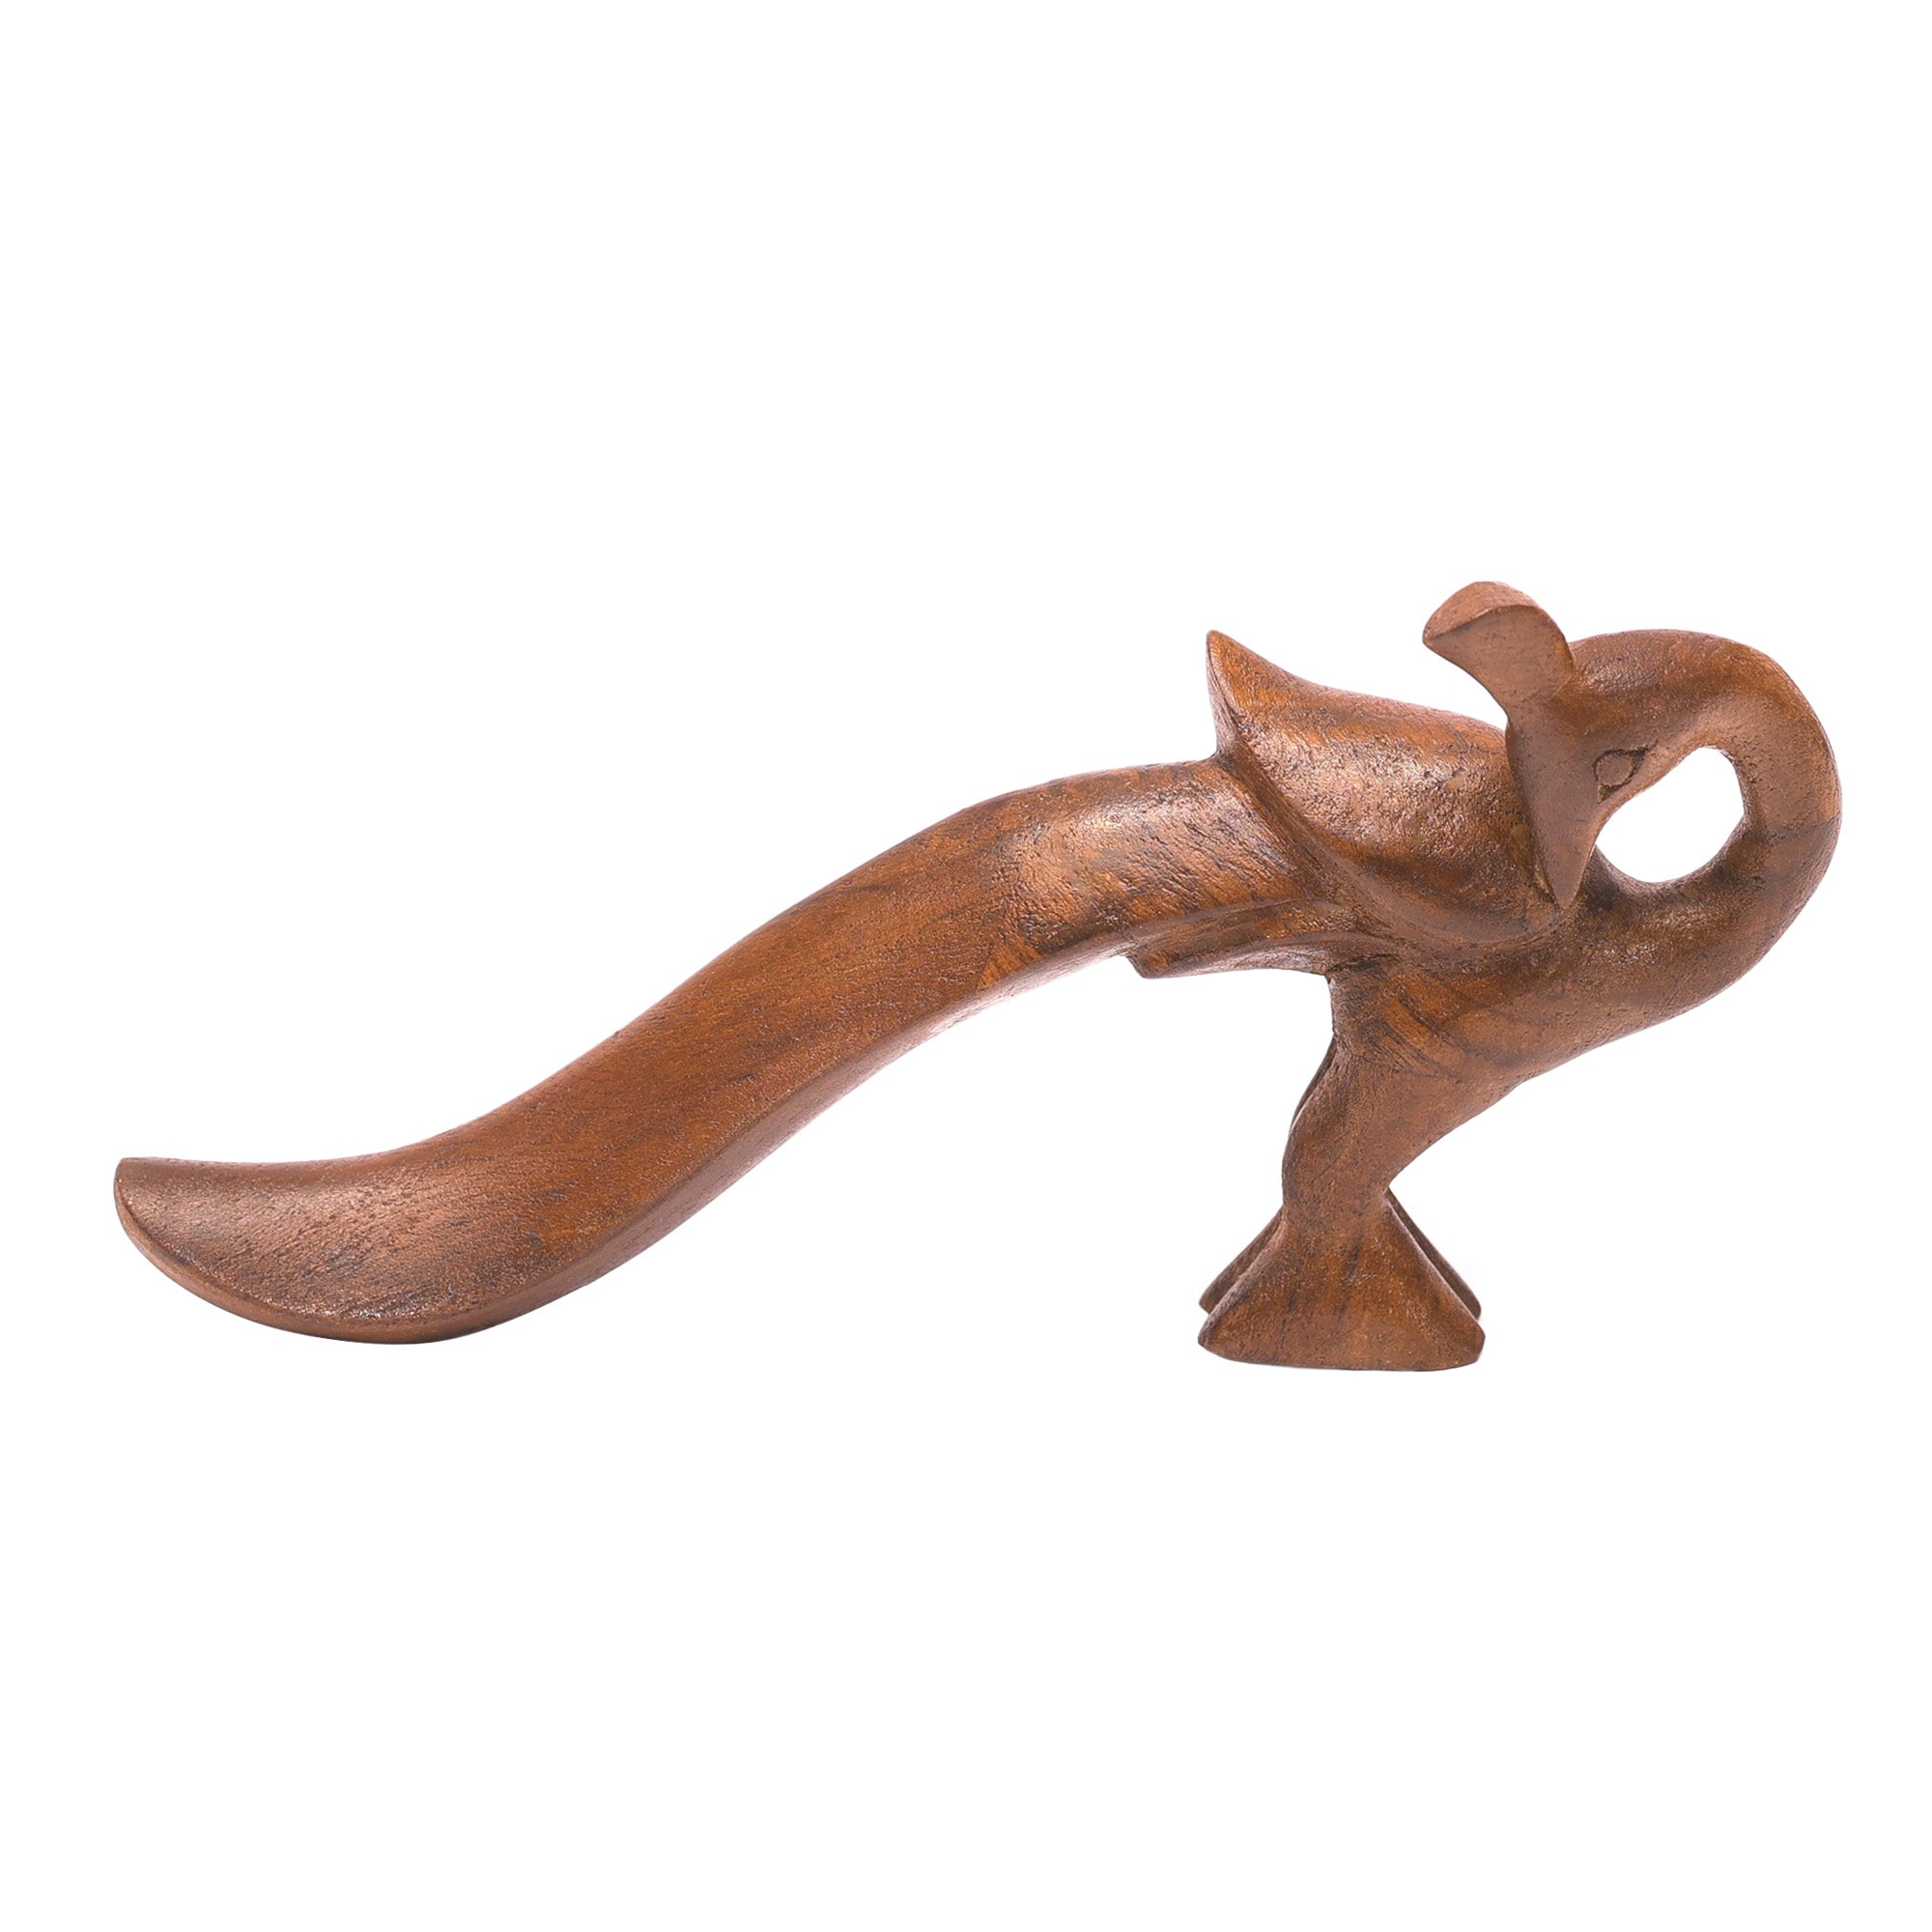 Wooden Hand-crafted Bird Showpiece Animal Figurine